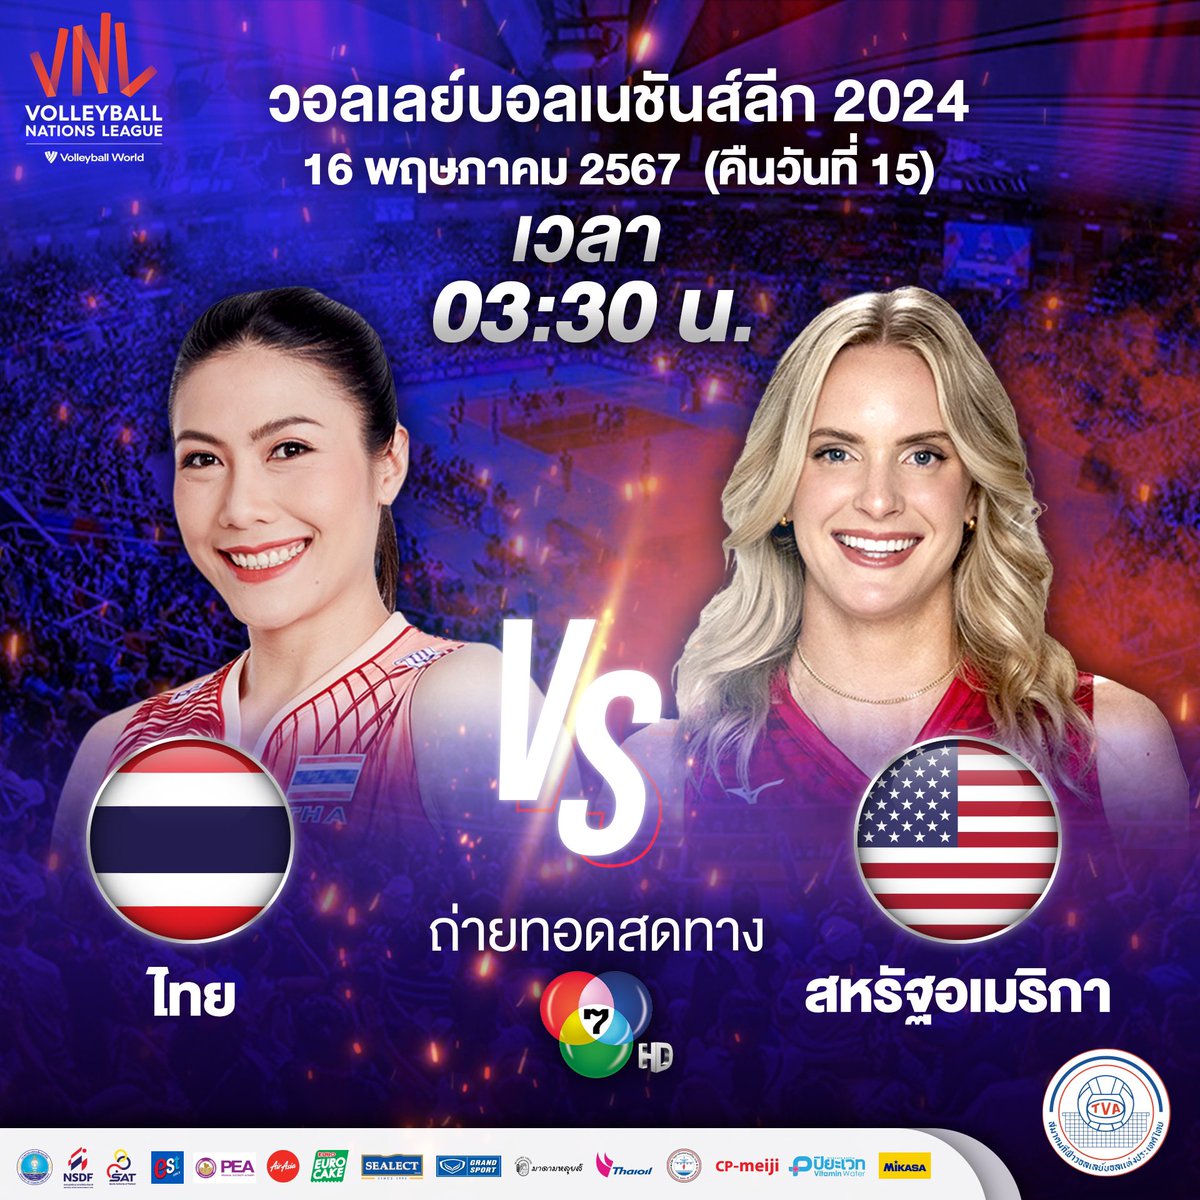 🏐 เช้าไม่กลัว ก็ต้องมาเชียร์ไทยยันเช้า ส่งกำลังใจให้สาวไทยในศึกการแข่งขัน วอลเลย์บอลหญิงเนชันส์ลีก 2024 นัดแรก เวลา 03.30 น. (คืนวันที่ 15 พ.ค.) ทีมชาติไทย พบ สหรัฐอเมริกา 📺 รับชมได้ทาง ช่อง 7HD #thavolleyball_official #VNL2024 #volleyball #วอลเลย์บอลหญิง